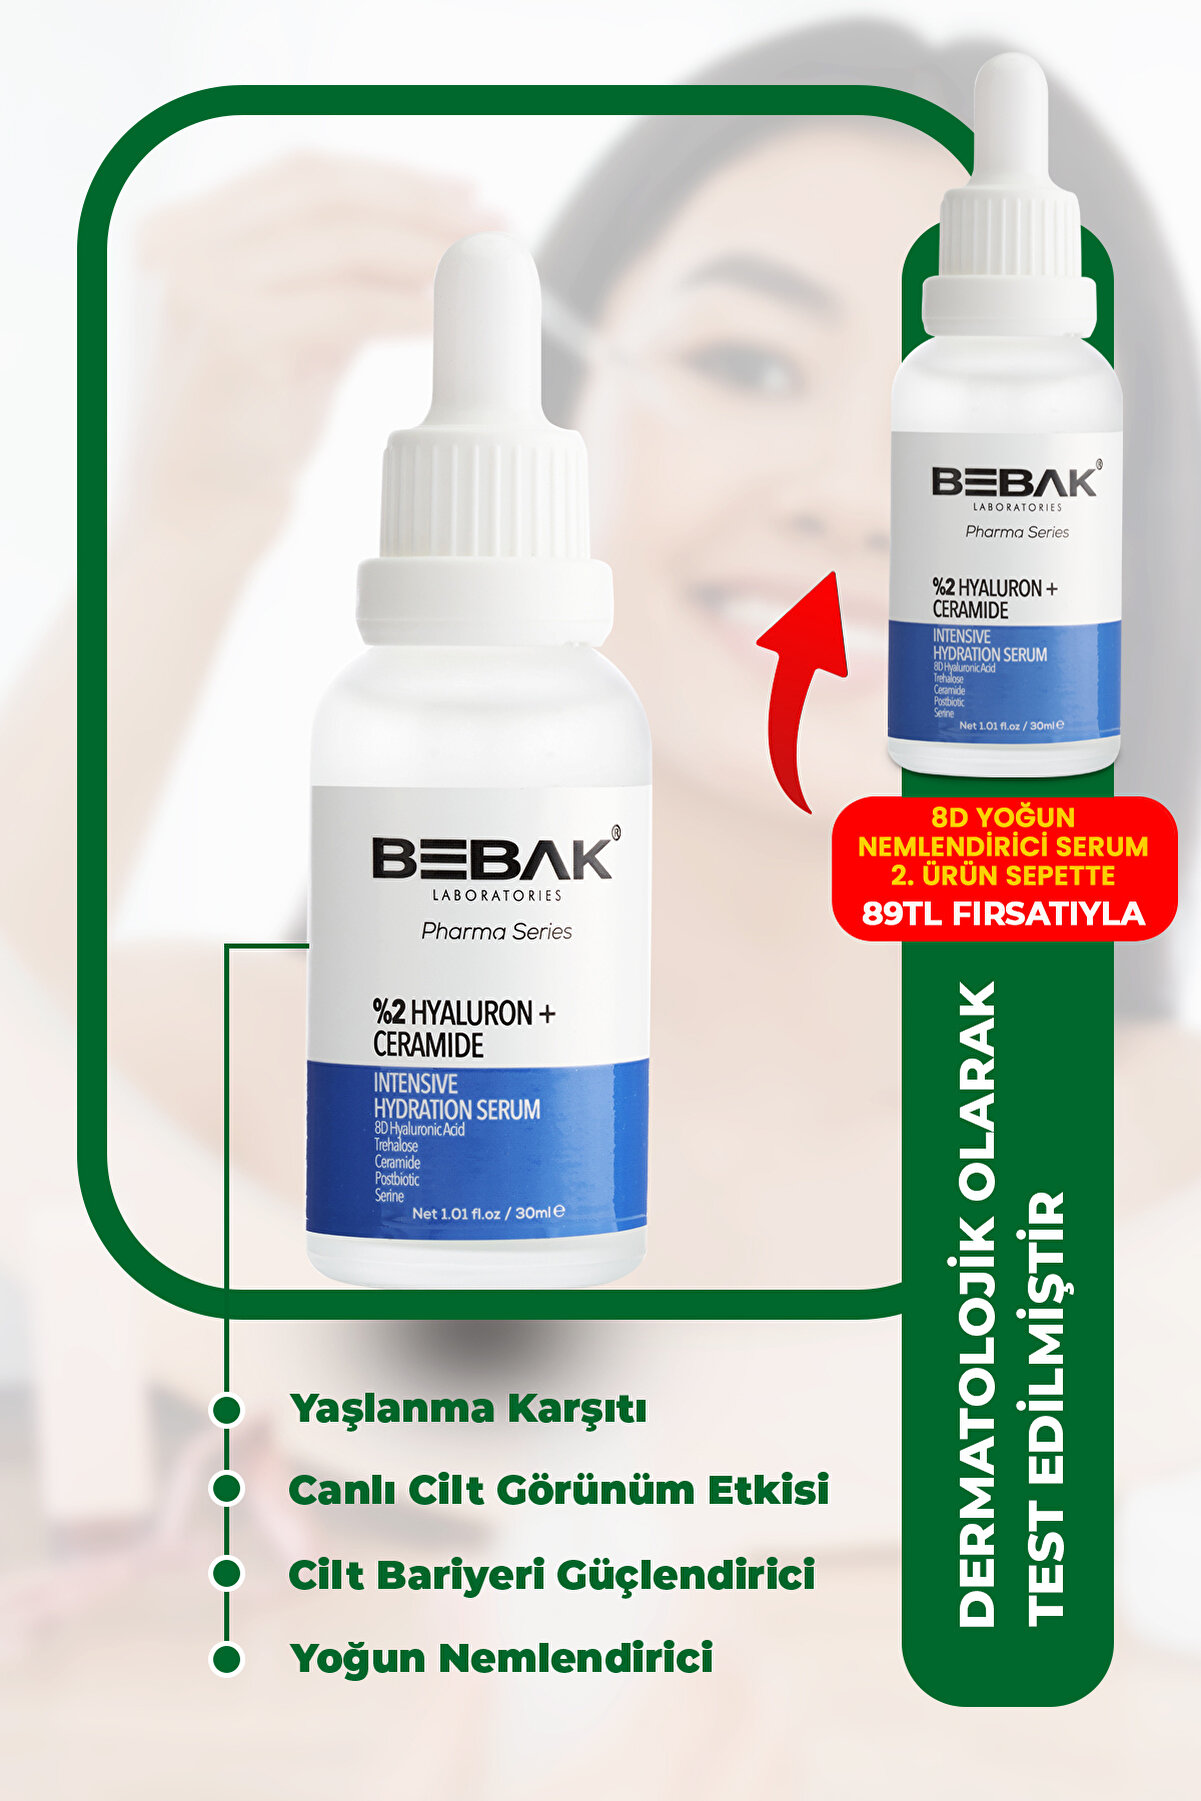 Bebak Pharma Yaşlanma Karşıtı, Bariyer Güçlendirici Ve Yoğun Nemlendiric 8d Hyaluron Serum 30ml